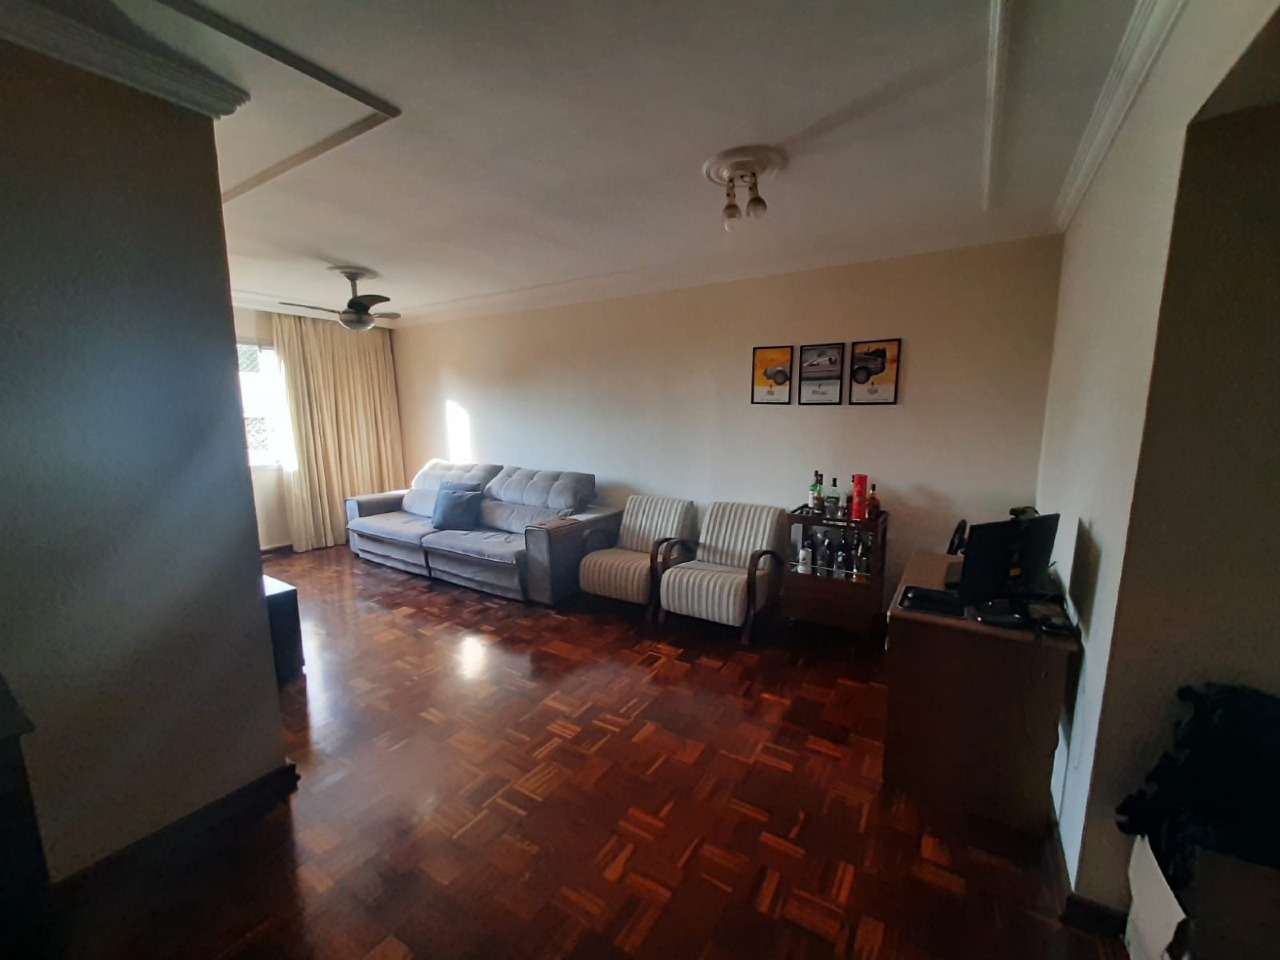 Apartamento para comprar, 3 quartos, 1 vaga, no bairro Nova América em Piracicaba - SP